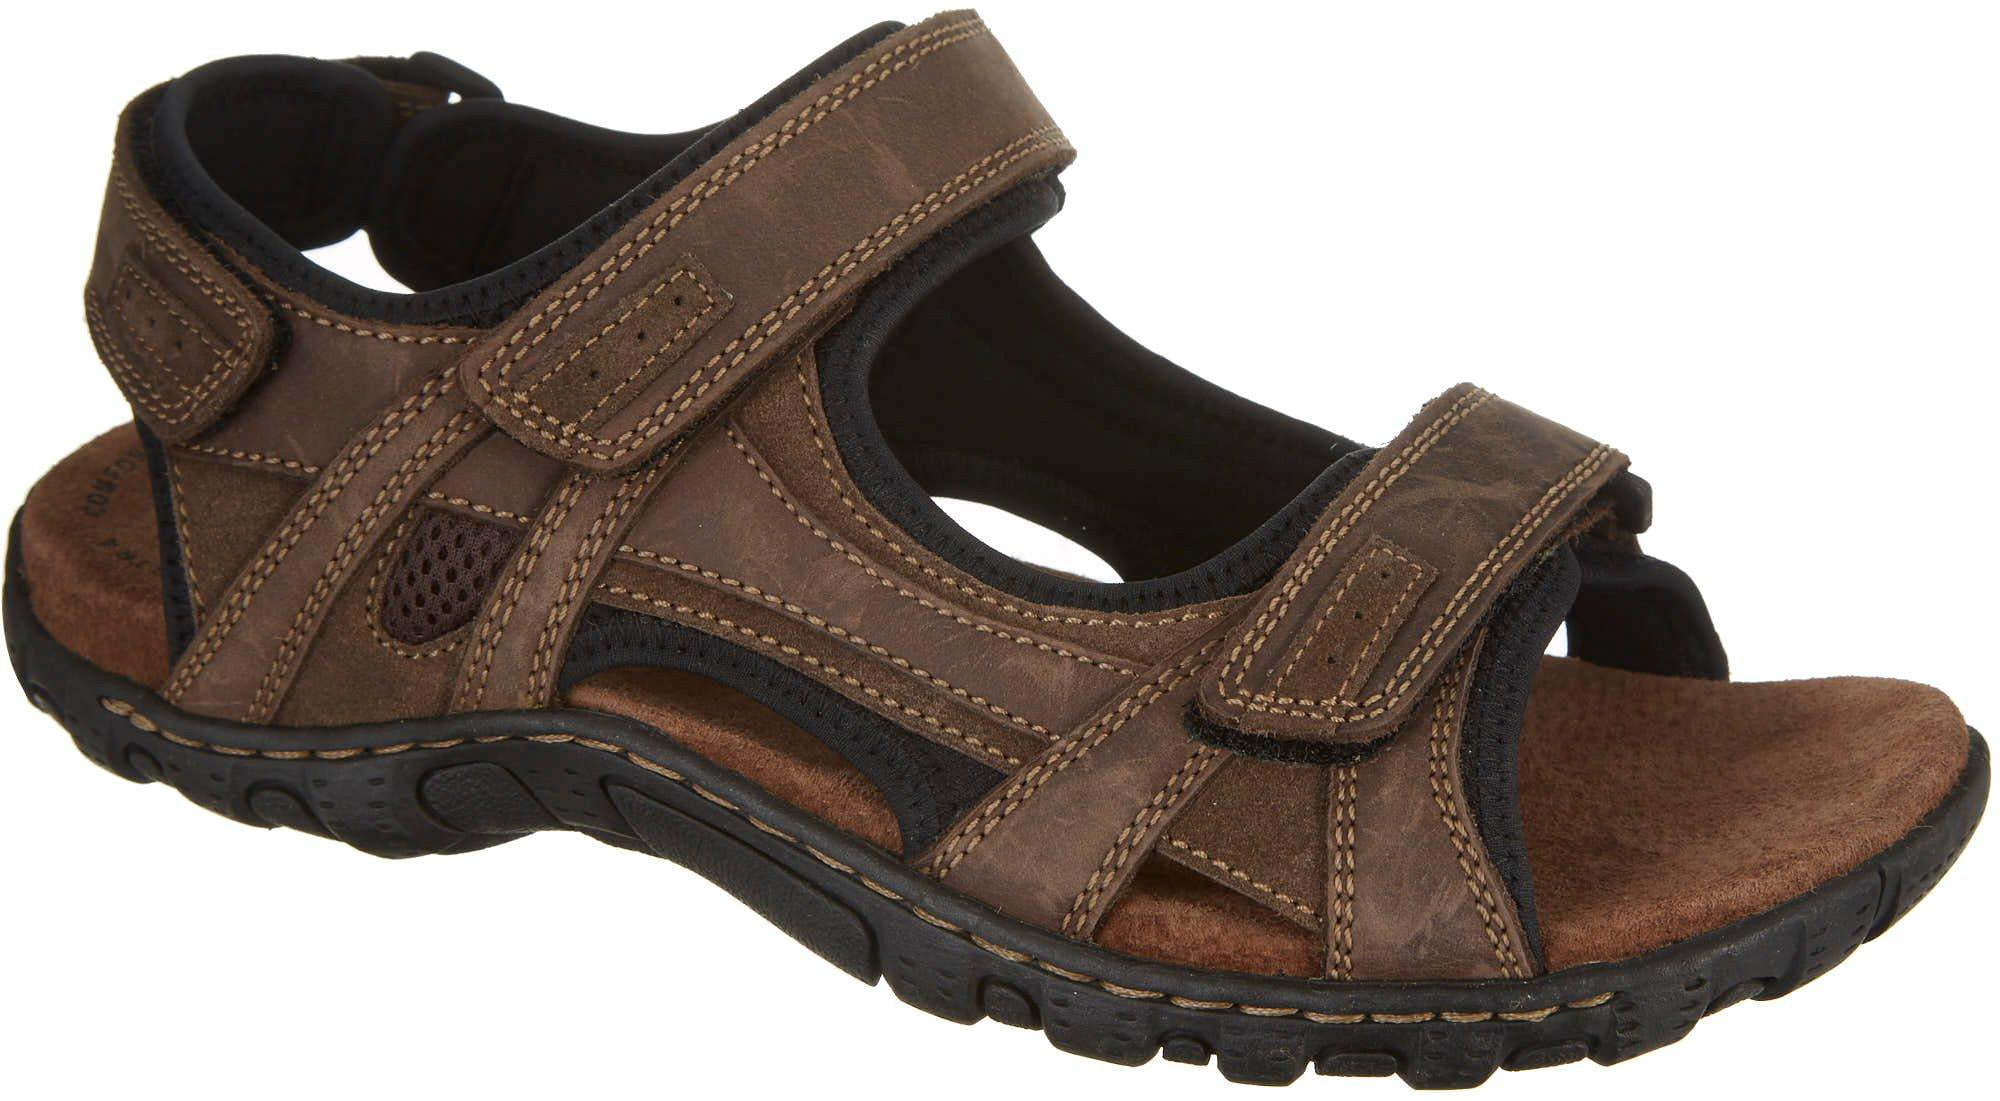 Buy Reel Legends Mens Bowfin Sandals 12 Brown at Ubuy Nigeria